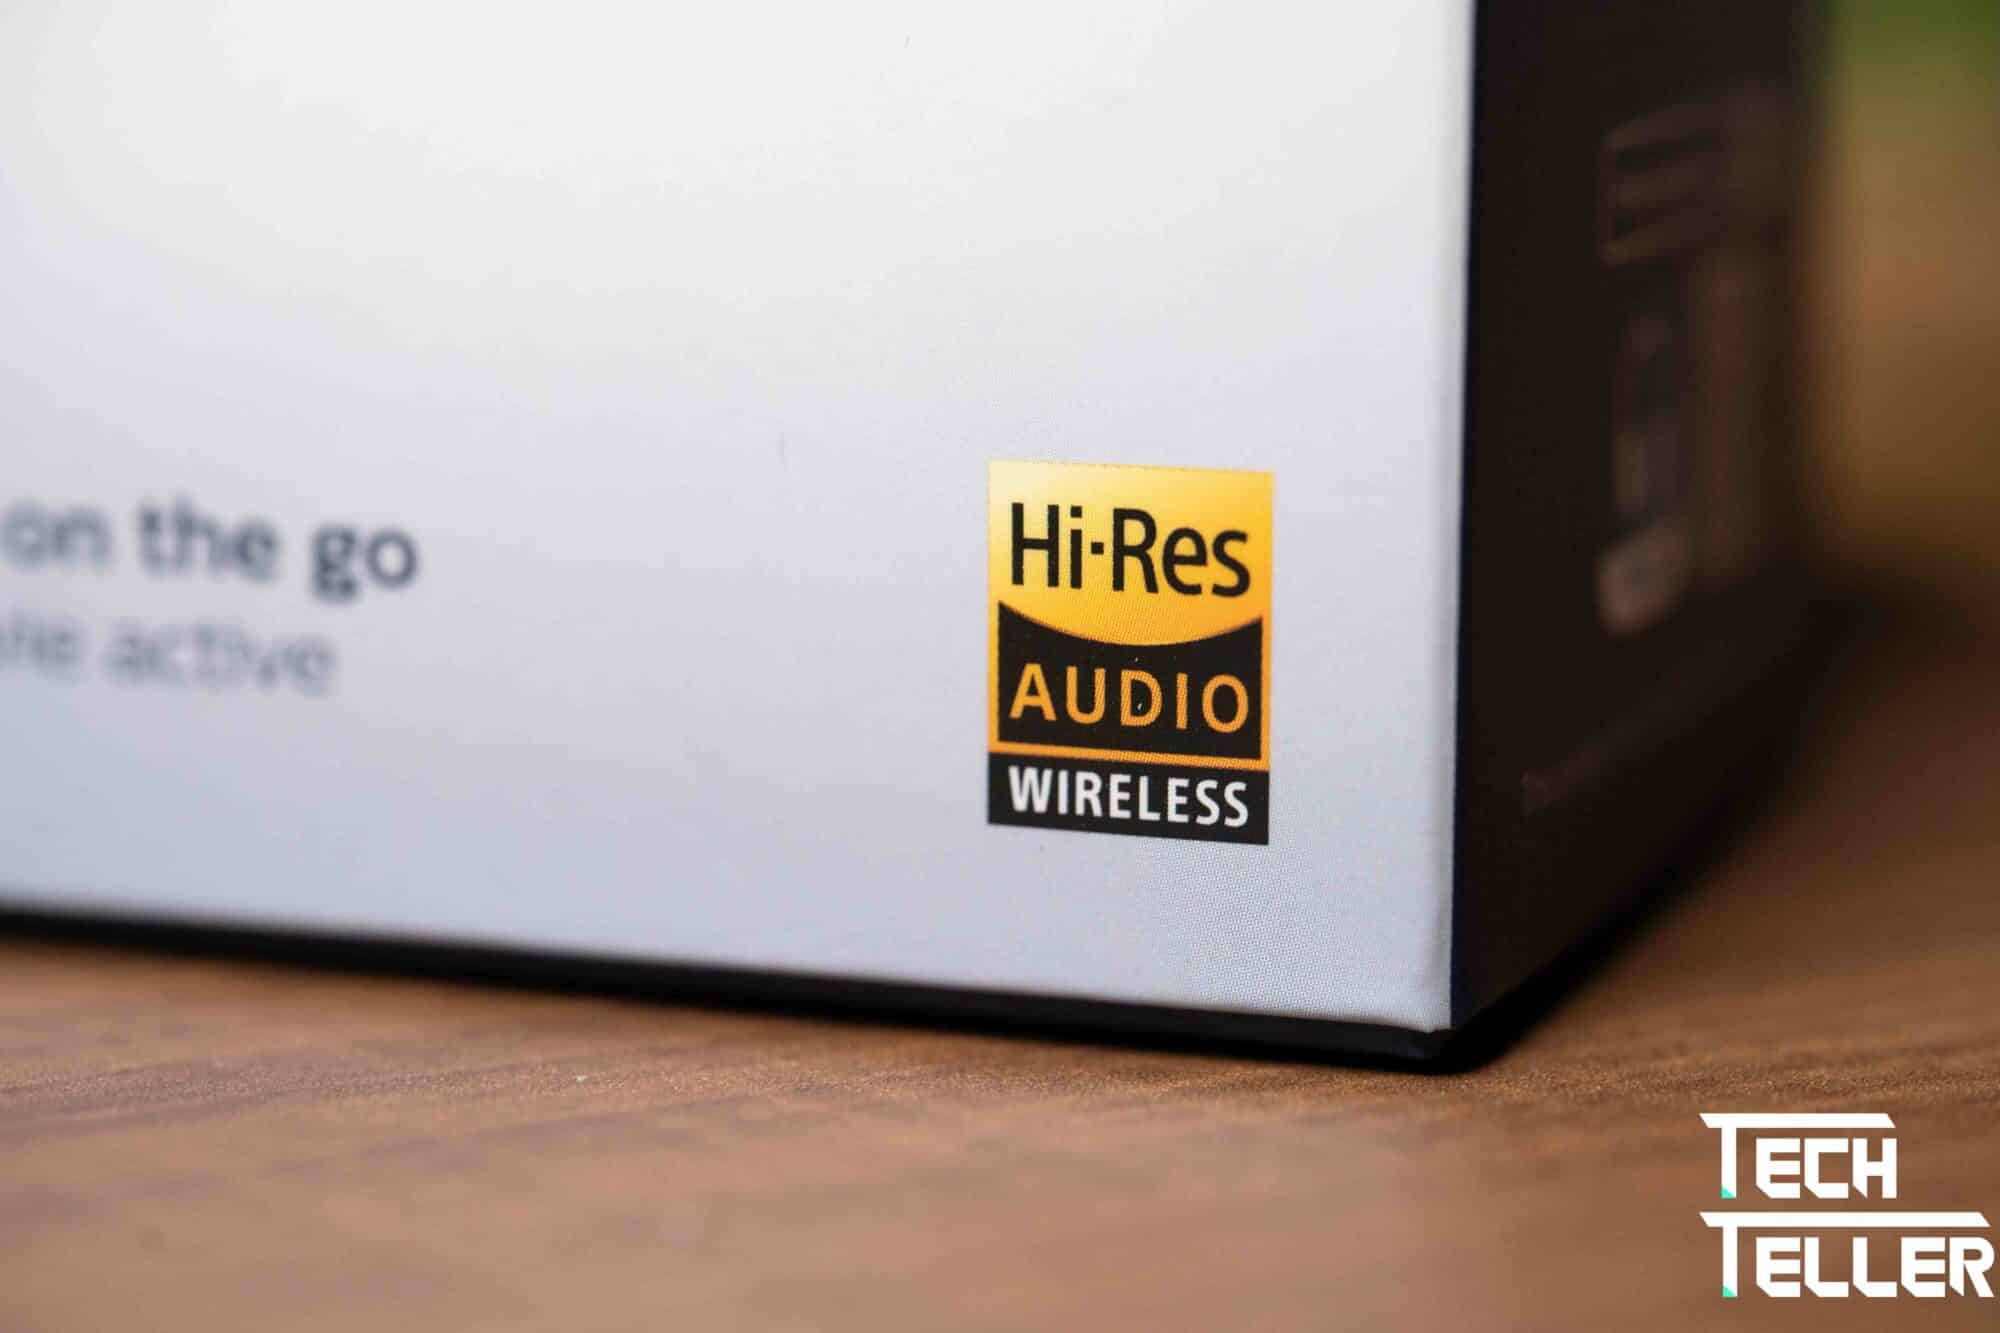 Hi-Res Audio Wireless